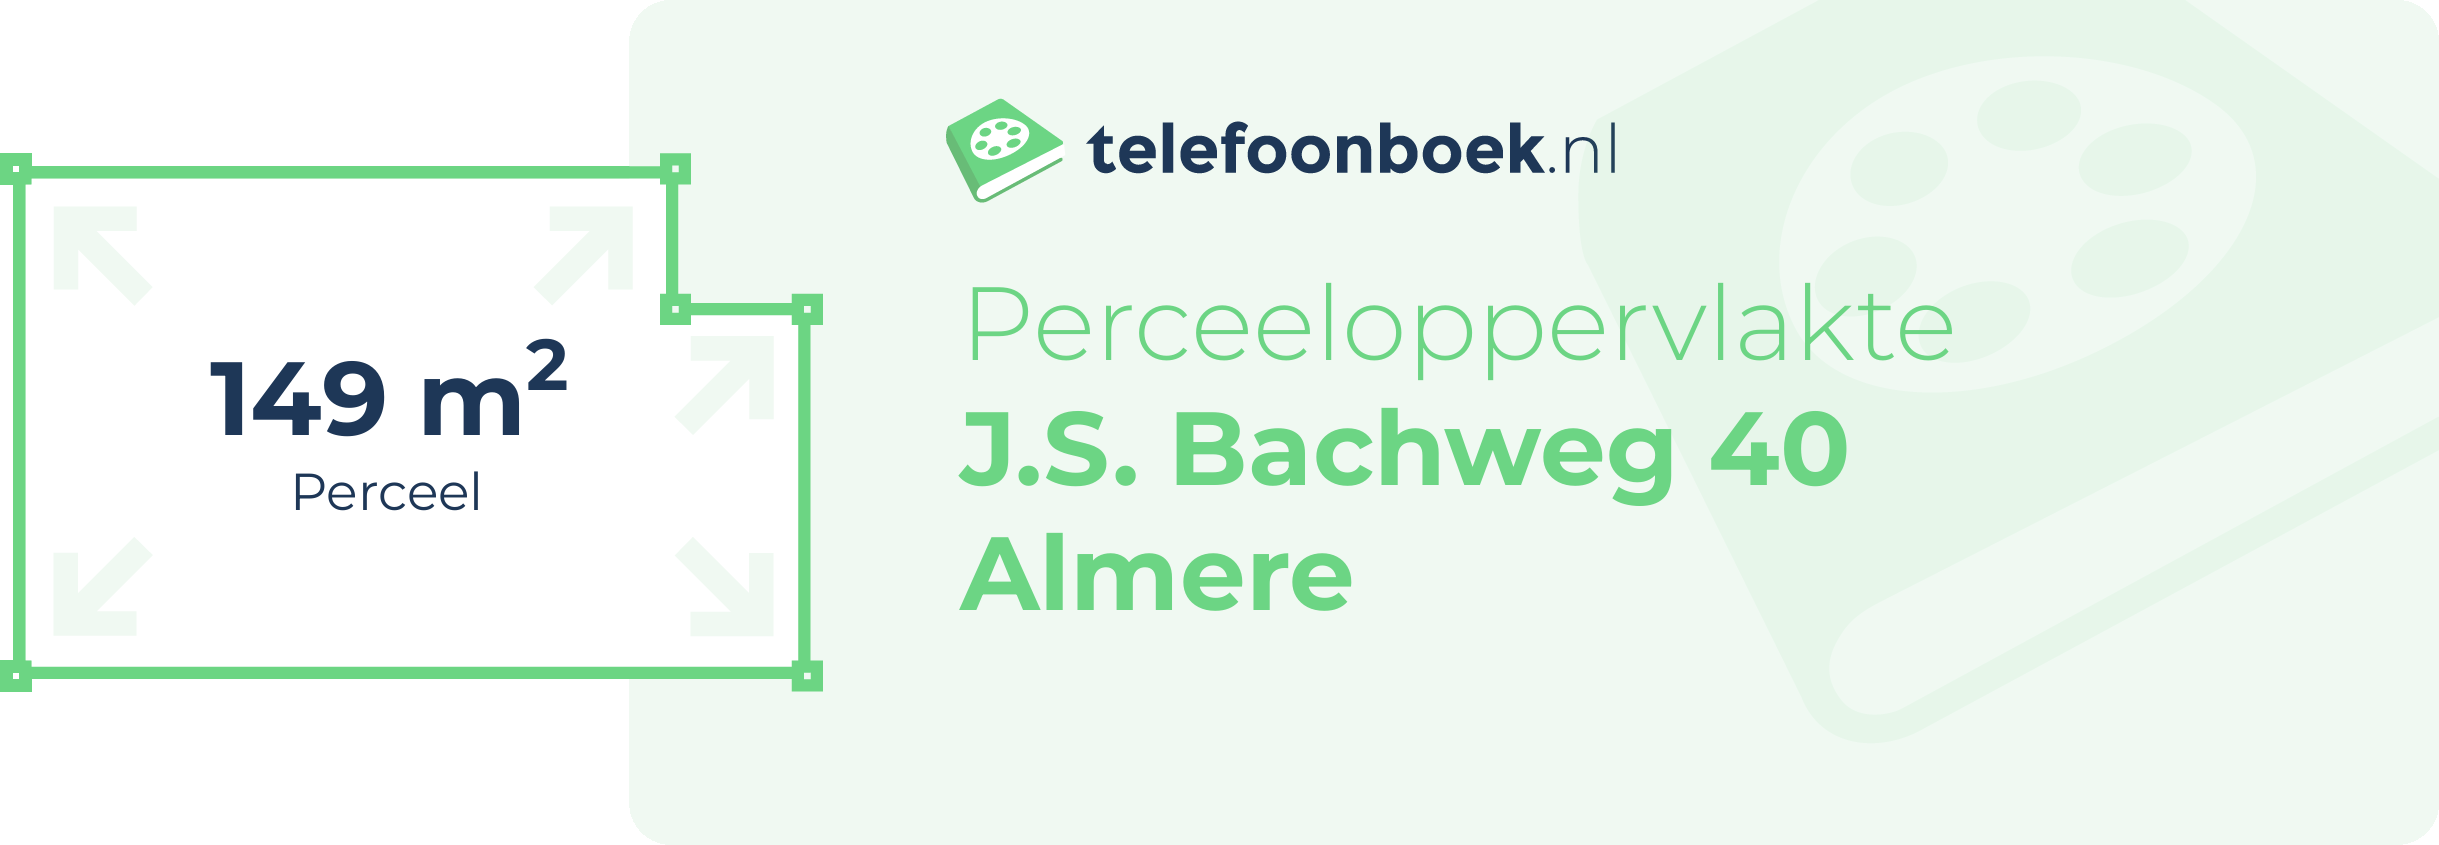 Perceeloppervlakte J.S. Bachweg 40 Almere